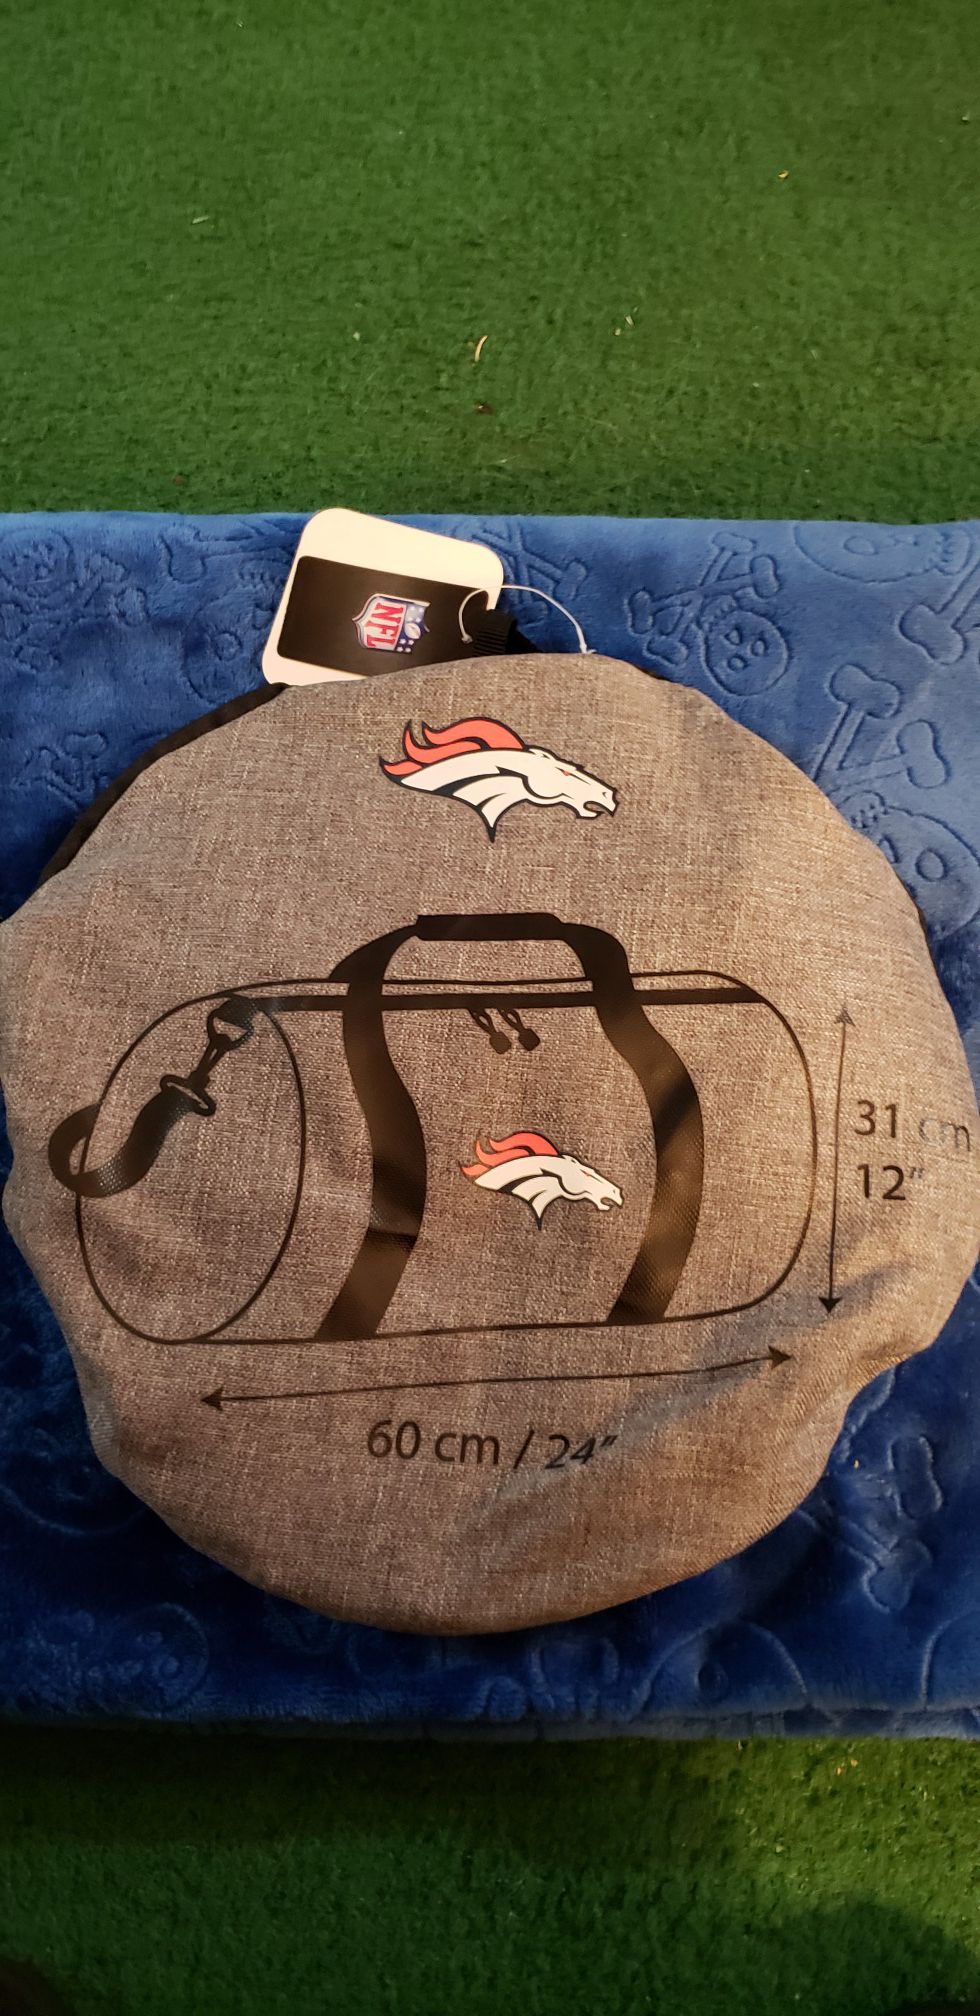 Denver Broncos duffle bag